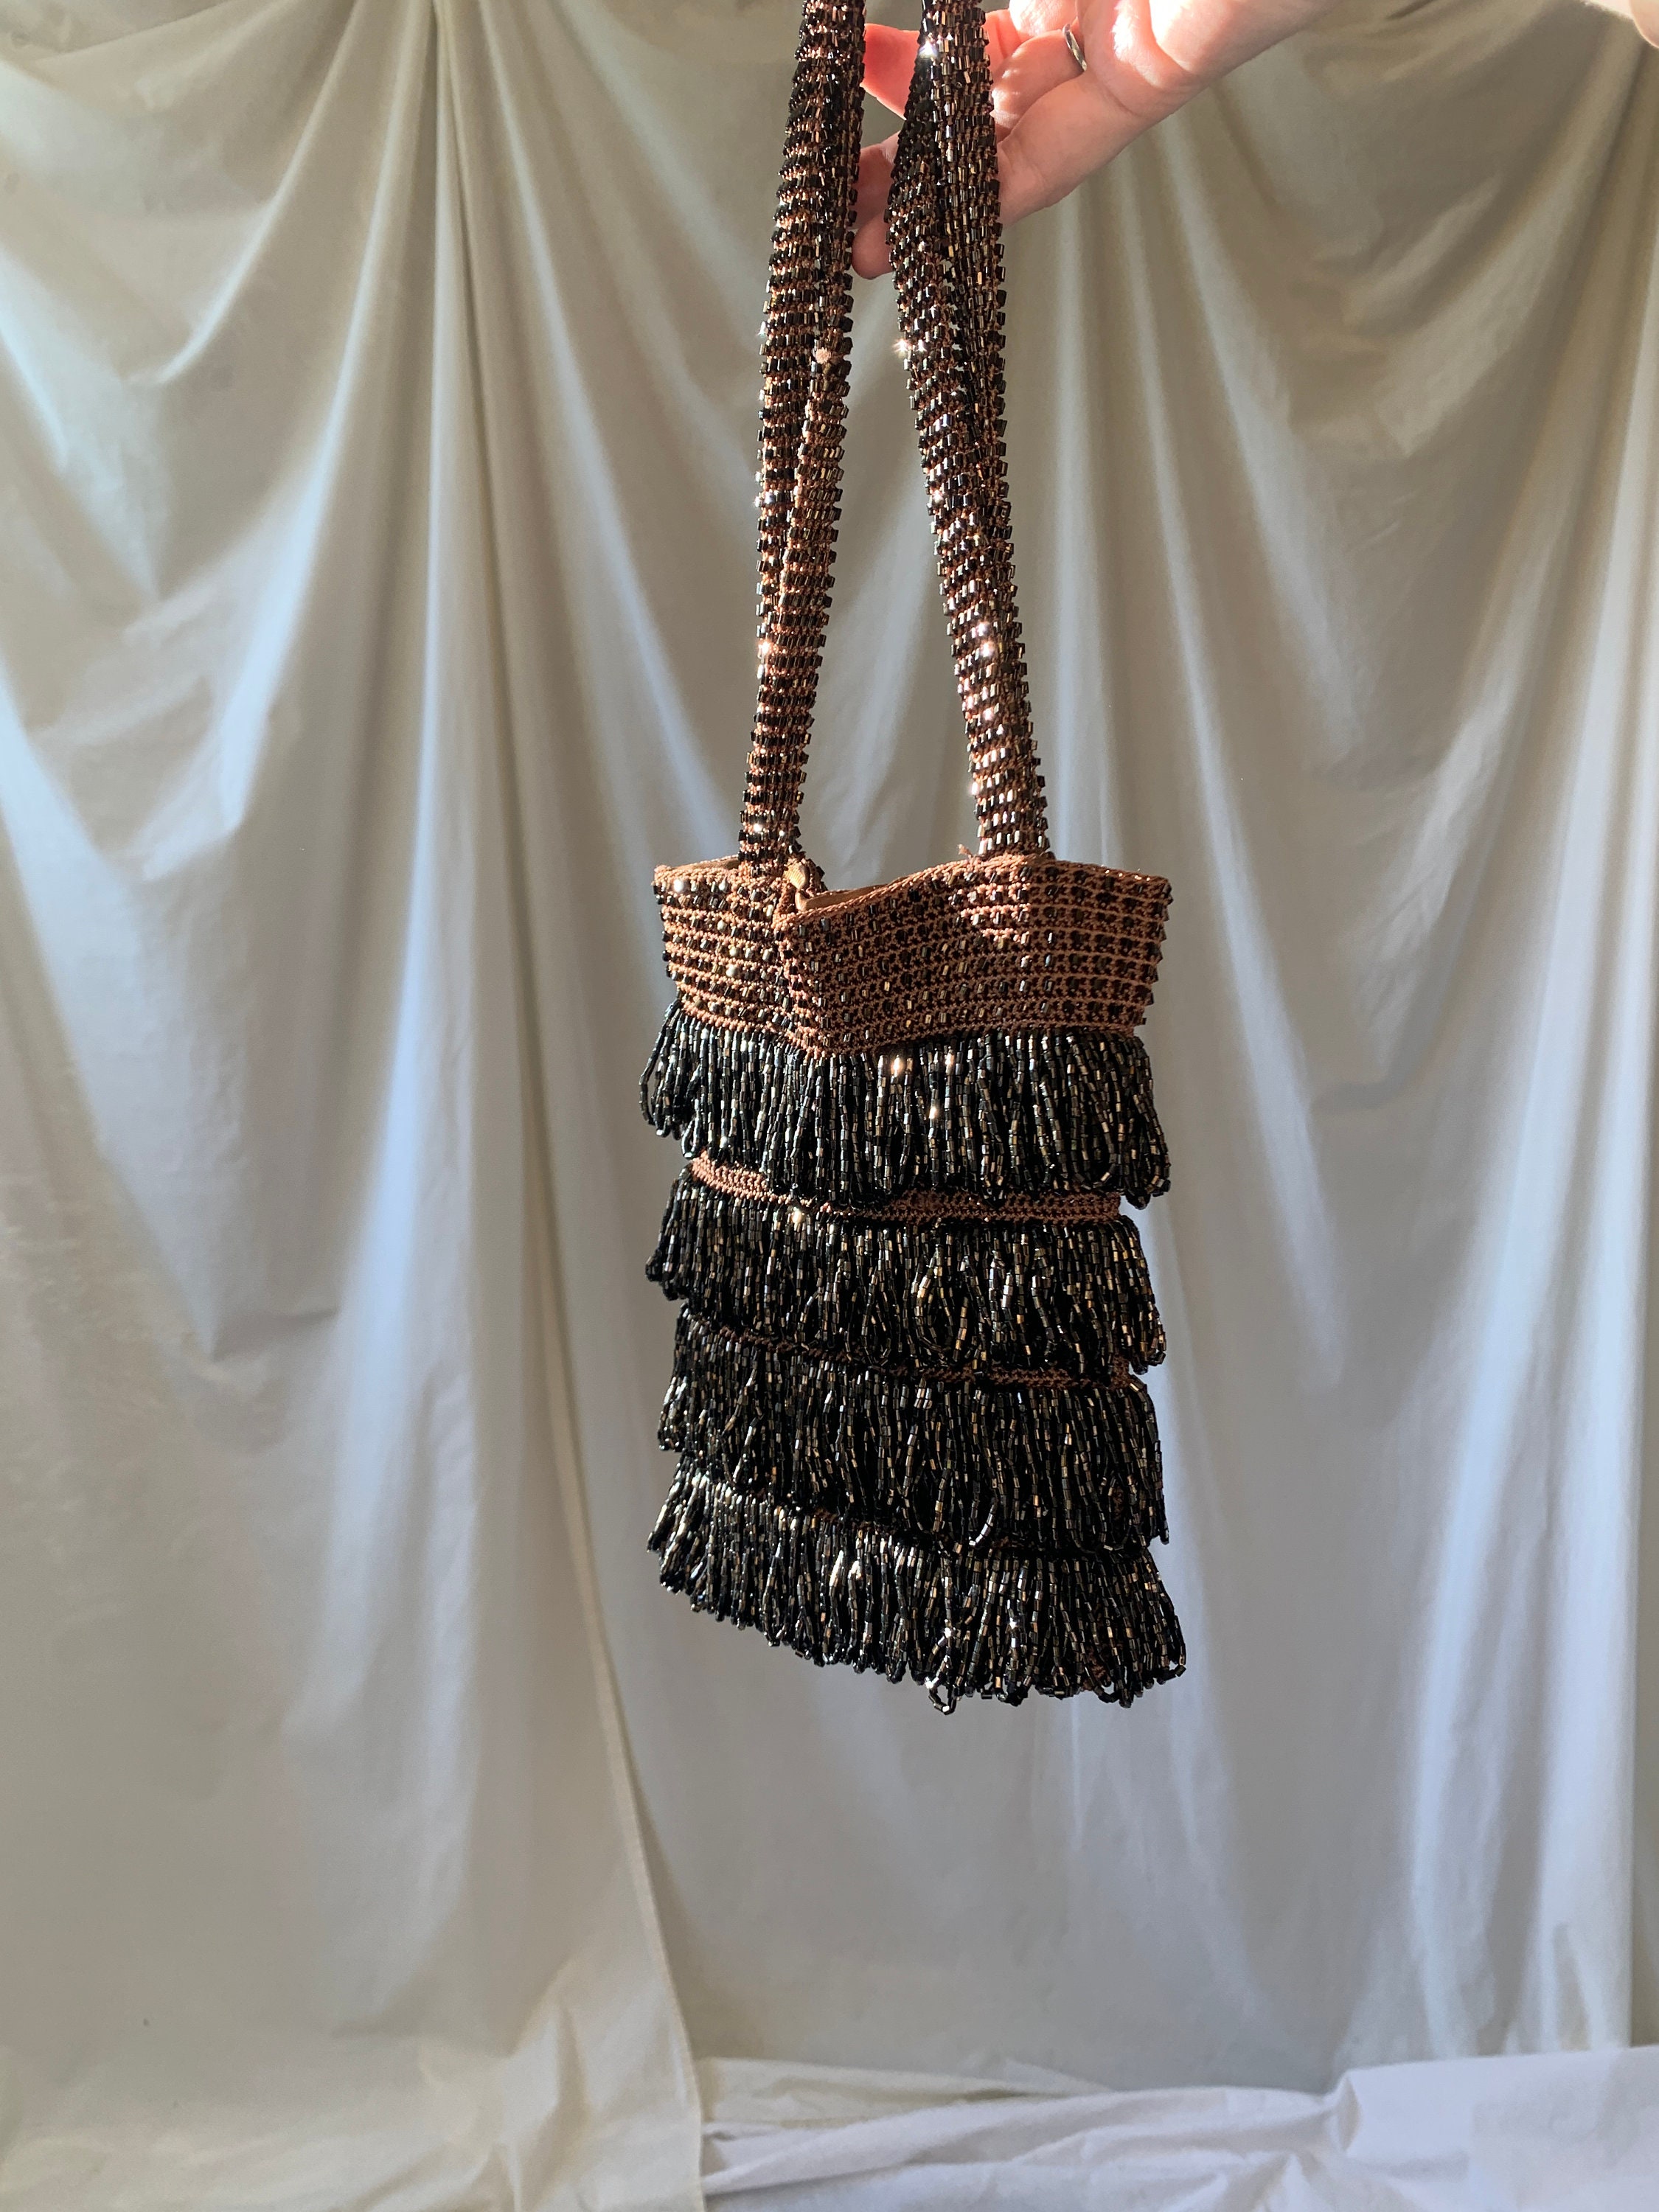 Women Denim Shoulder Bag Y2k Embroidered Tote Bag with Fringe Star